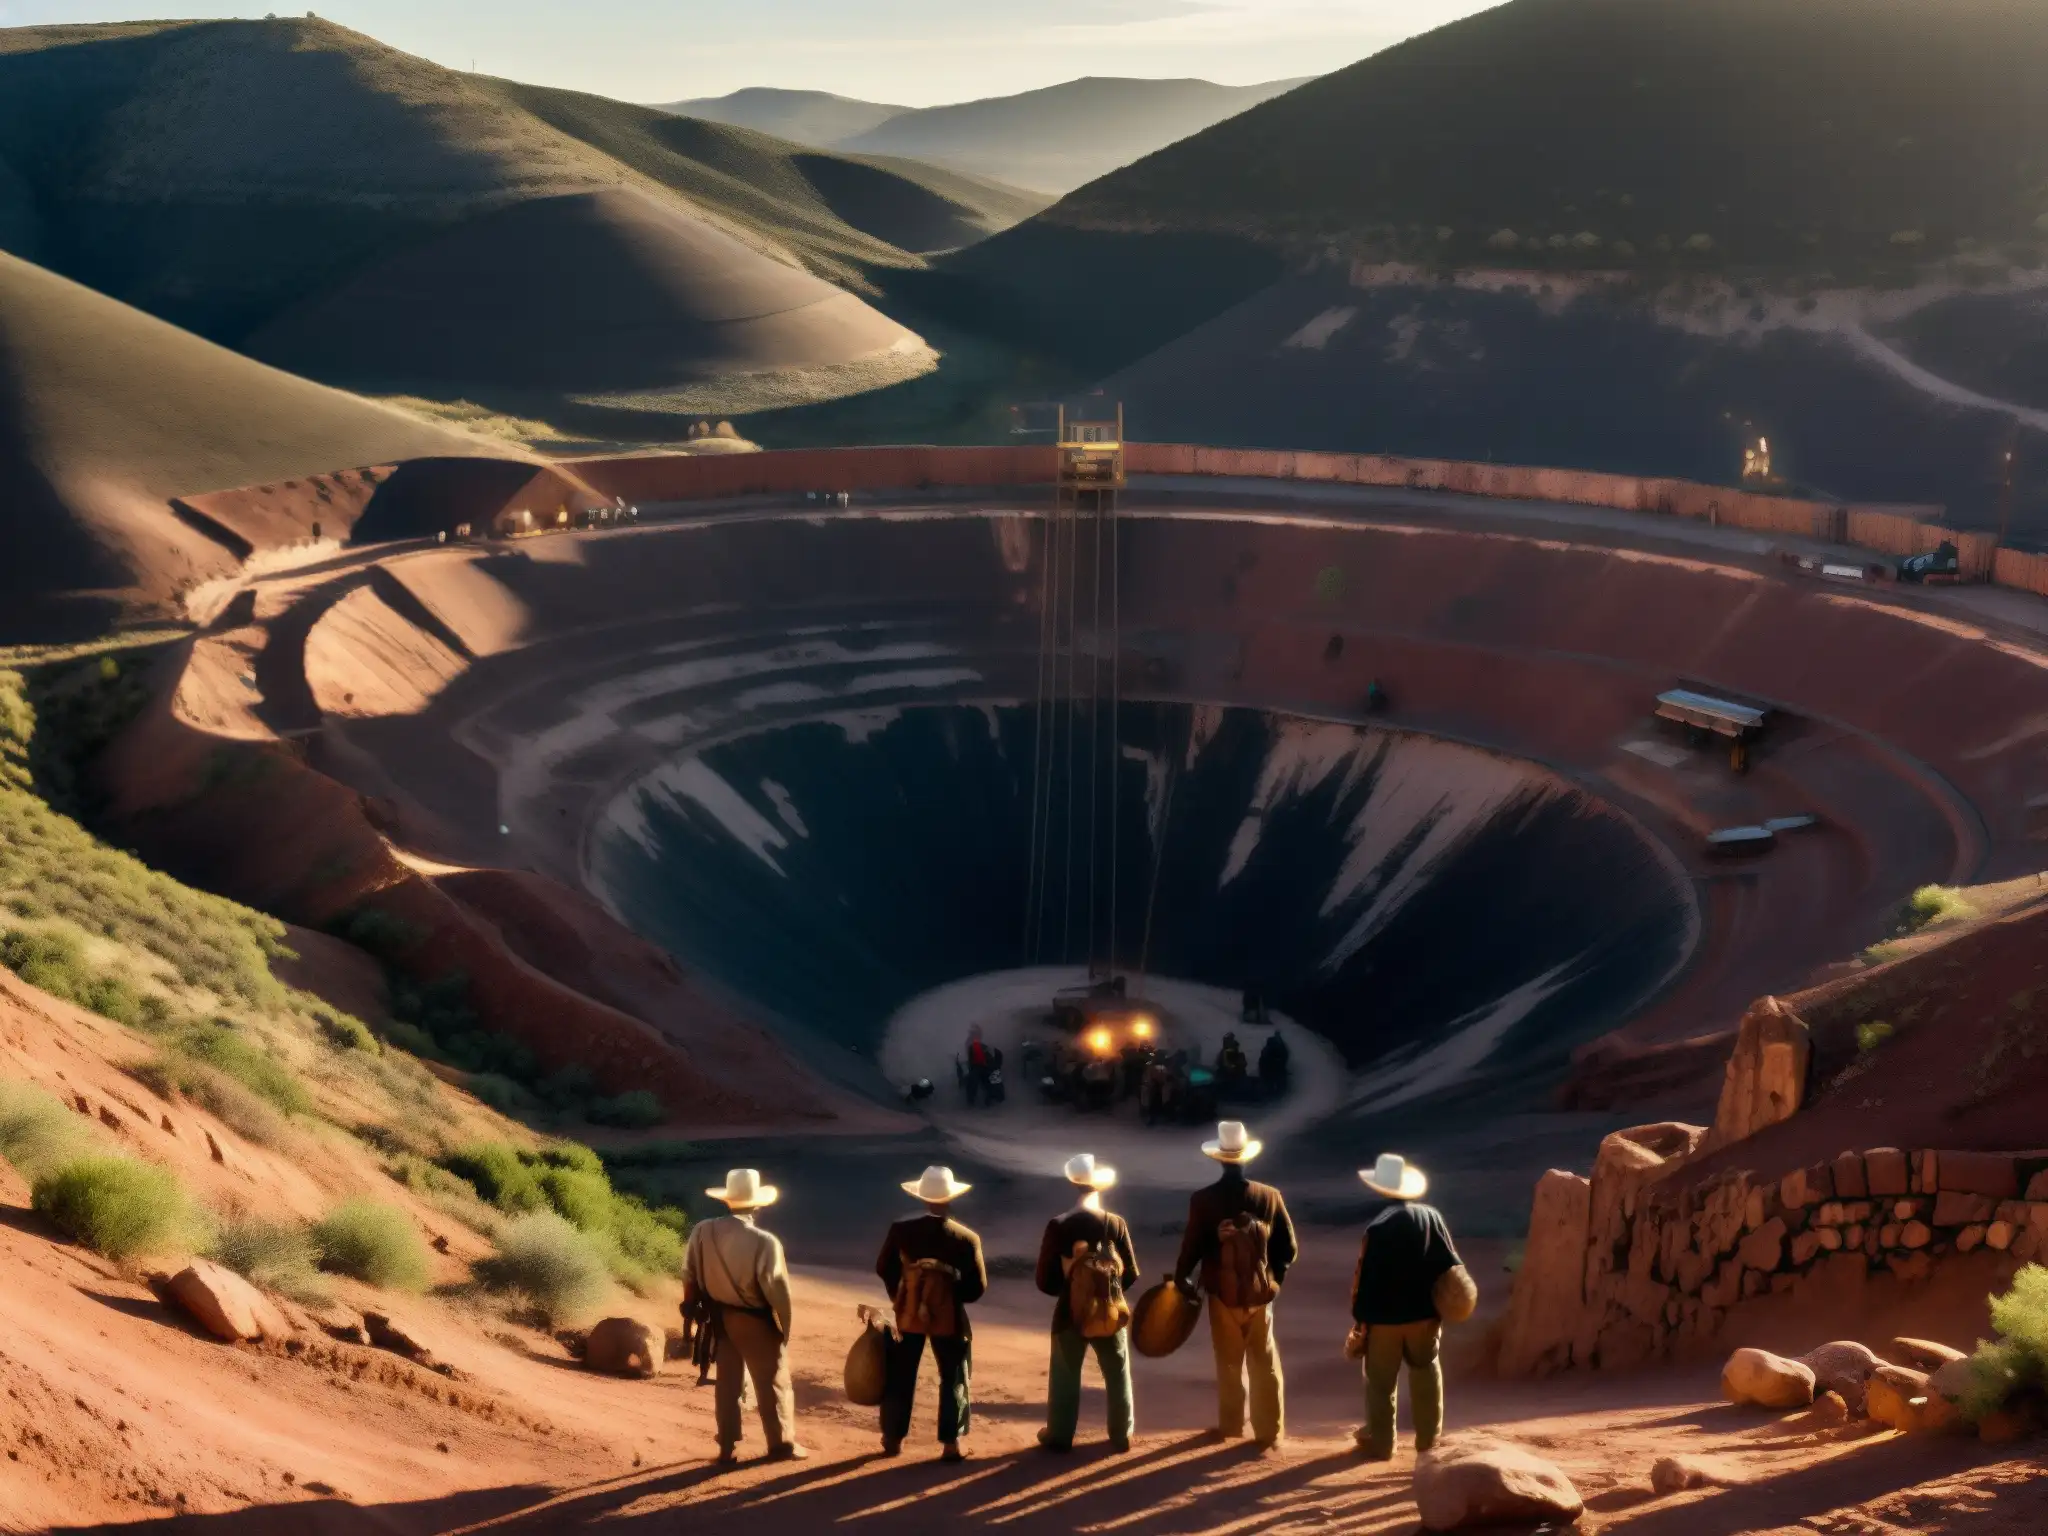 Un grupo de mineros en Zacatecas, México, es observado por un misterioso duende protector en una mina oscura